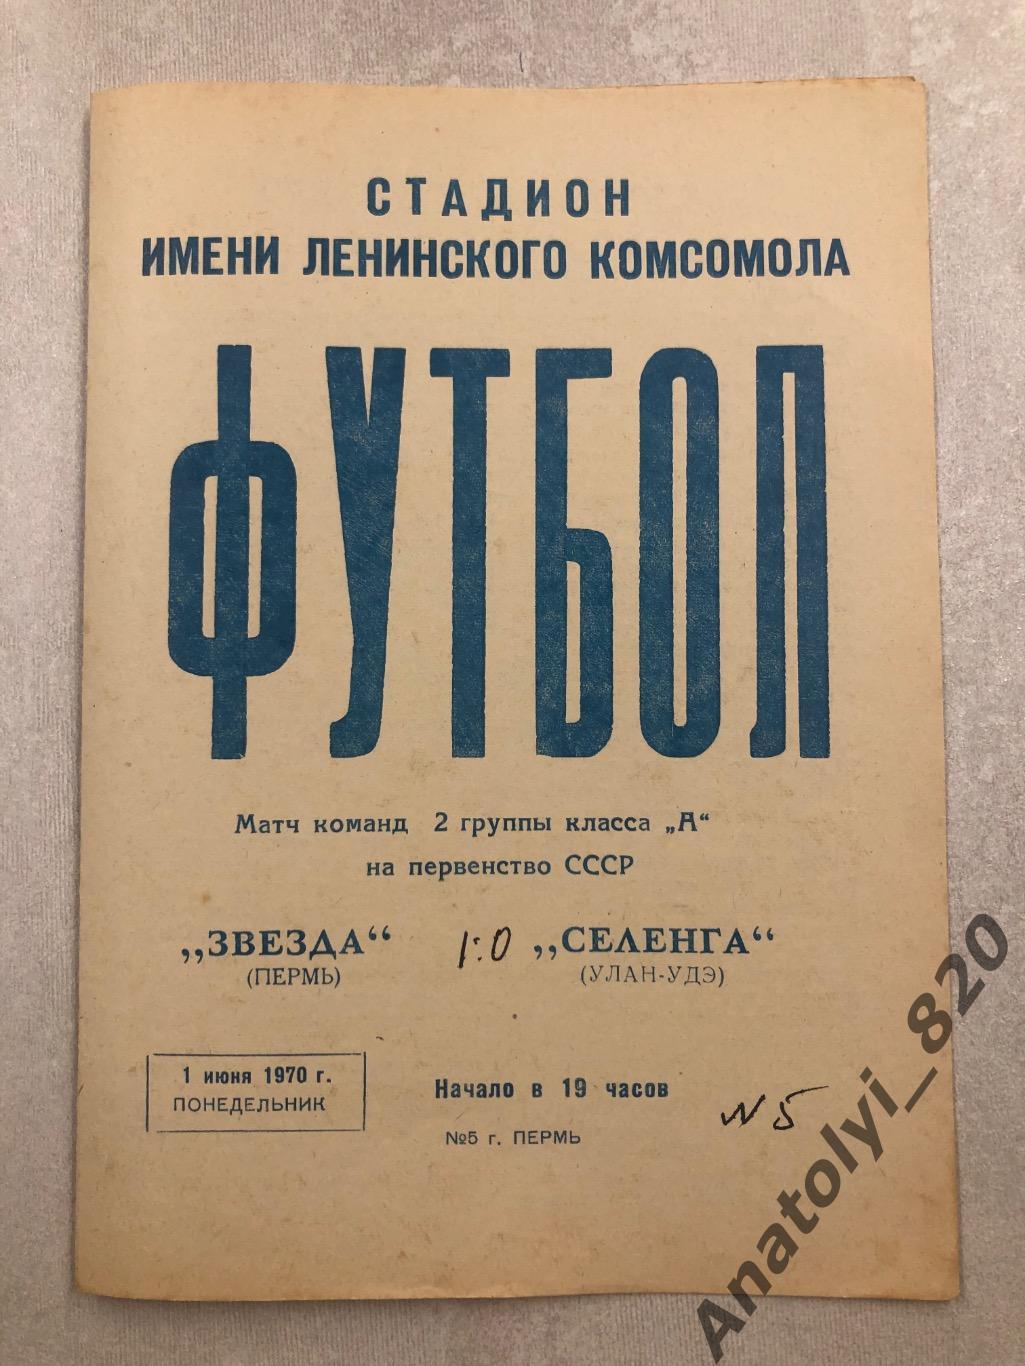 Звезда Пермь - Селенга Улан-Удэ 1970 год